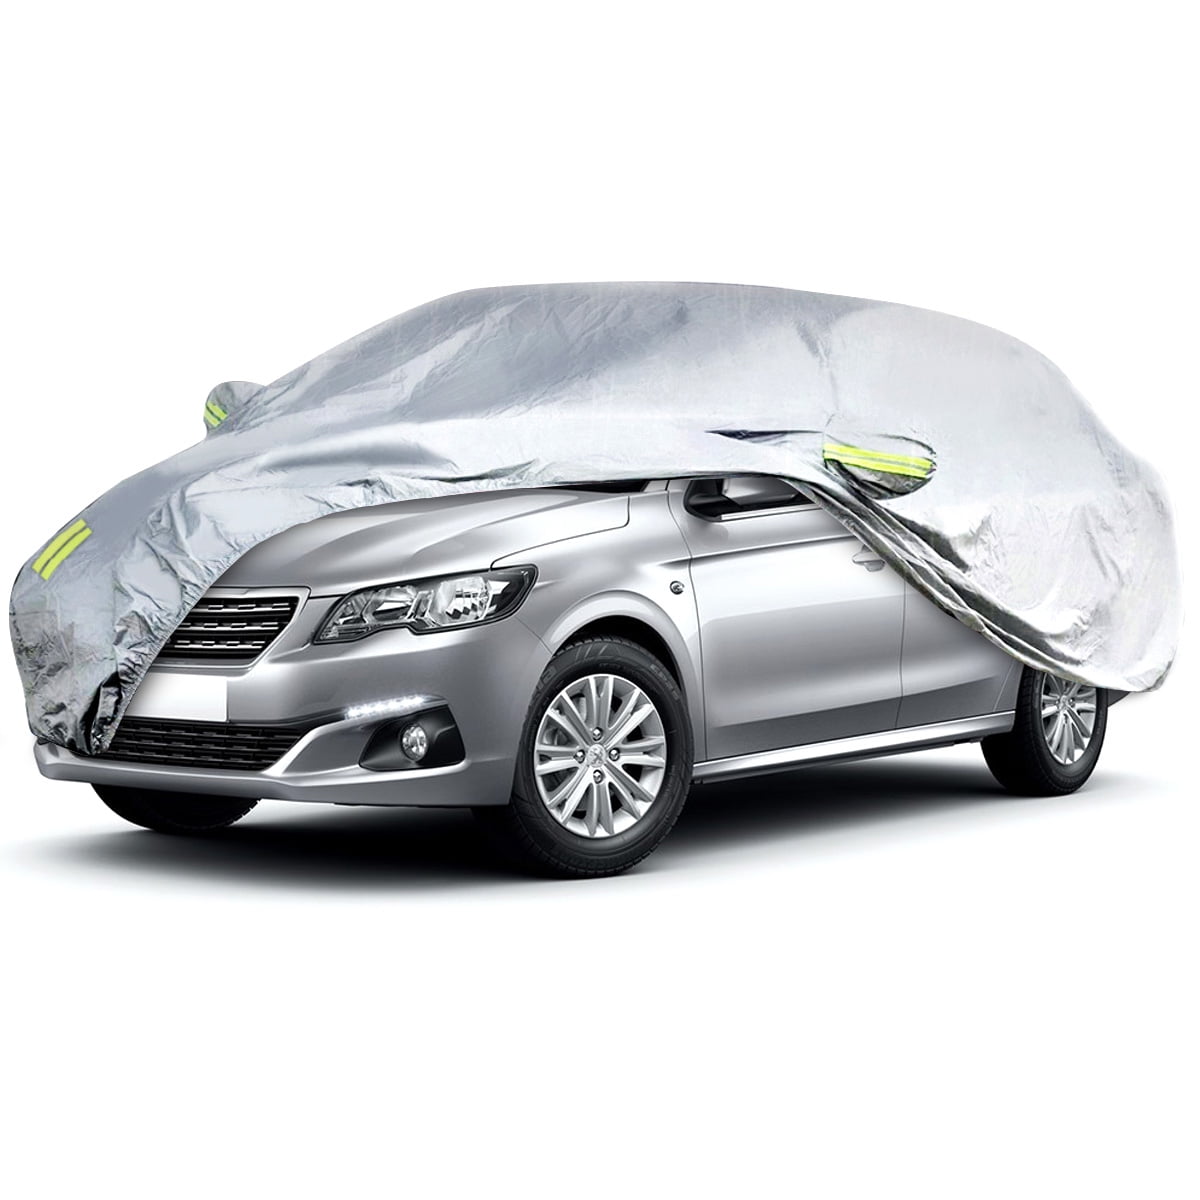 Eluto Sedan Car Cover Universal, Indoor Outdoor Waterproof Full